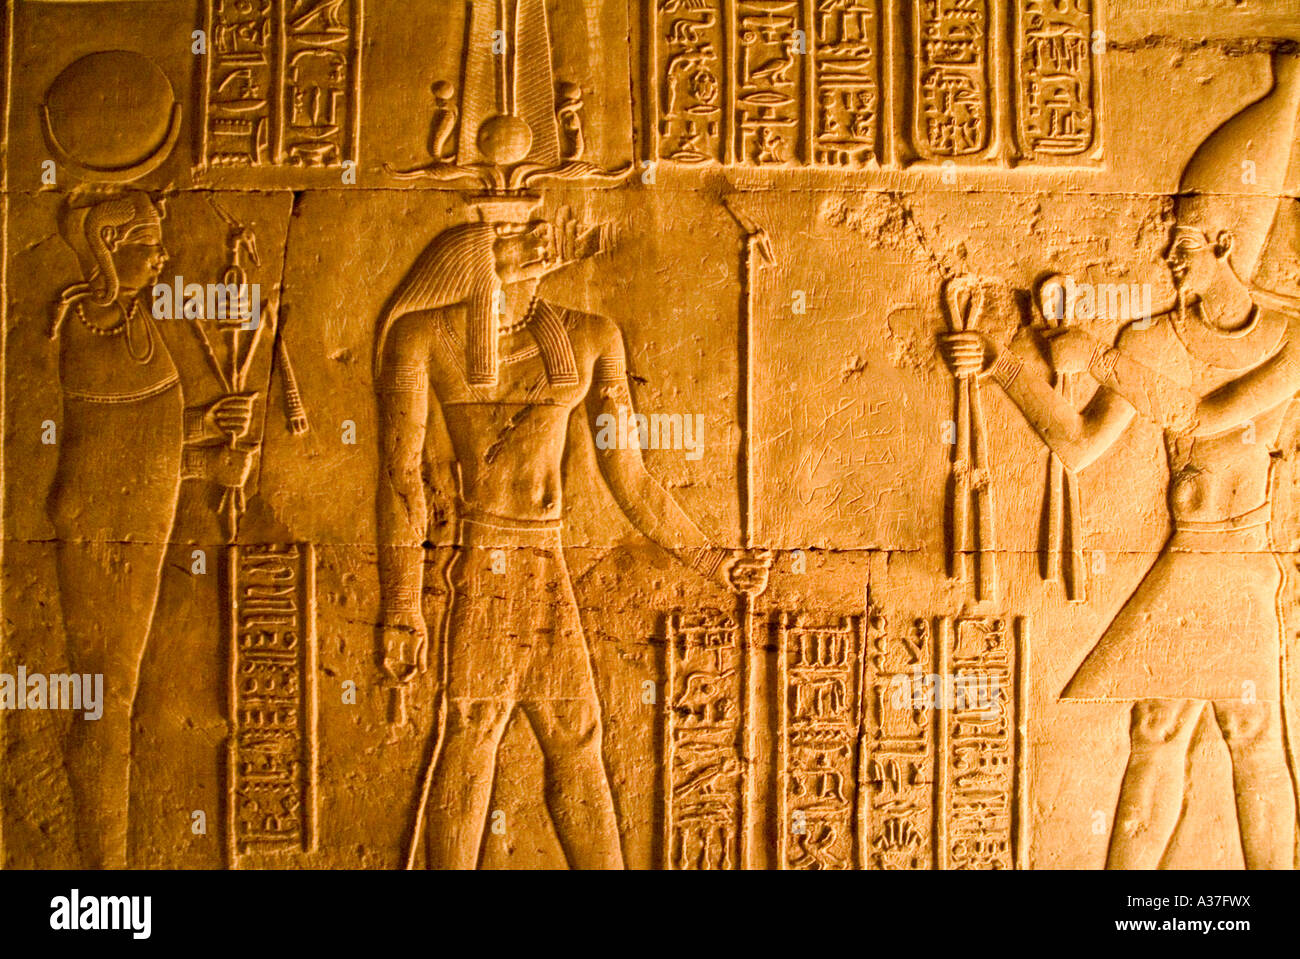 Hiéroglyphes mur Temple de Kom Ombo Nil période ptolémaïque reste du sanctuaire de temps Thoutmosis Egypte Afrique du Nord Banque D'Images